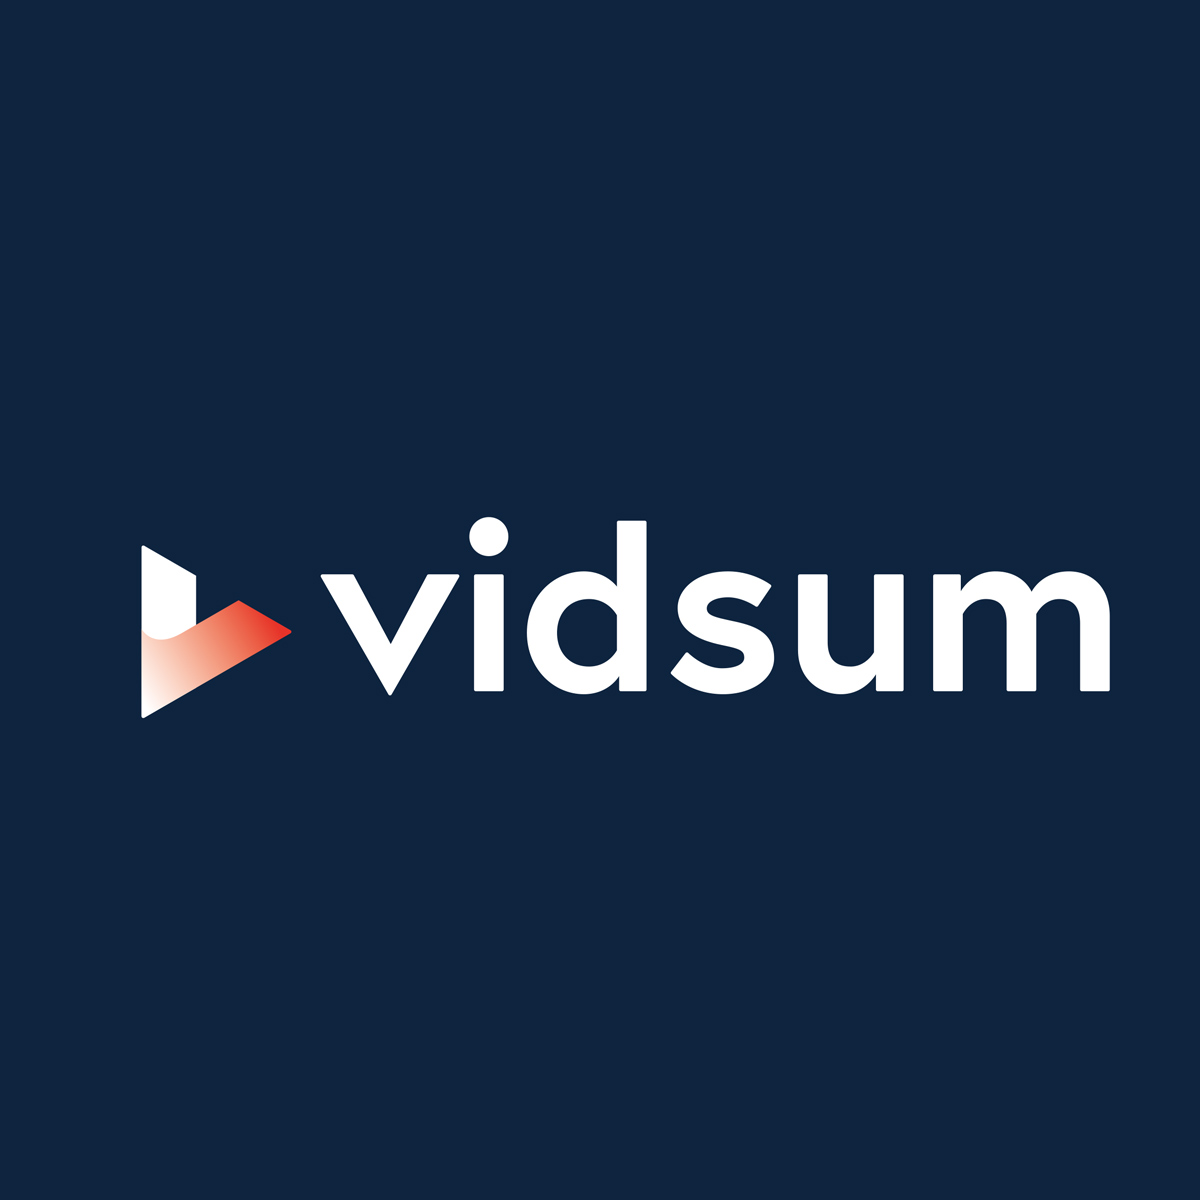 (c) Vidsum.com